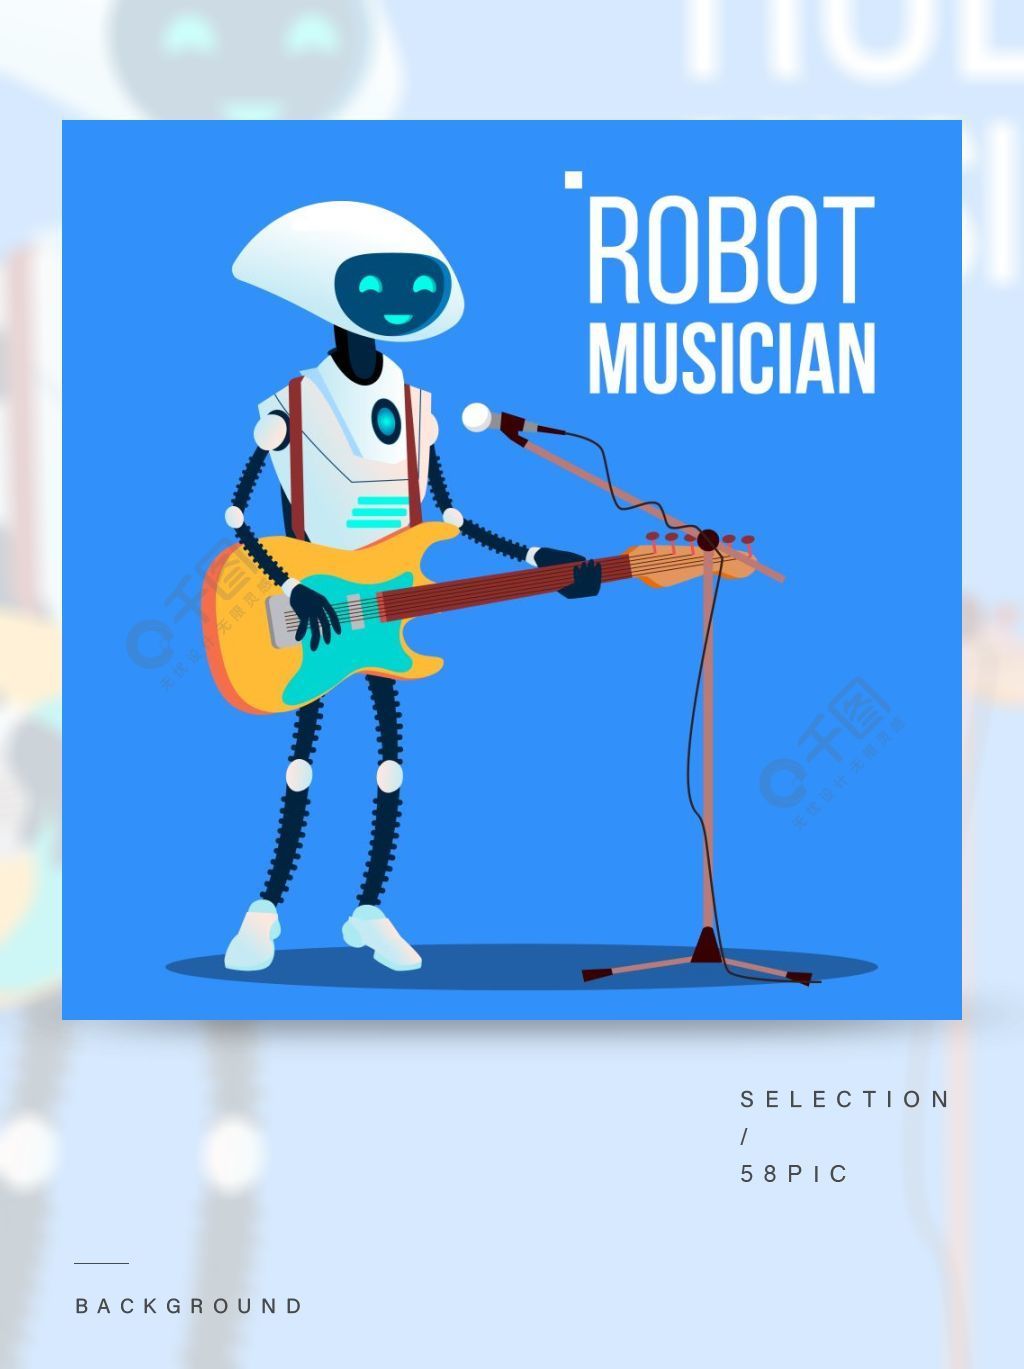 弹吉他和唱歌入话筒传染媒介的机器人音乐家插图弹吉他和唱歌入话筒